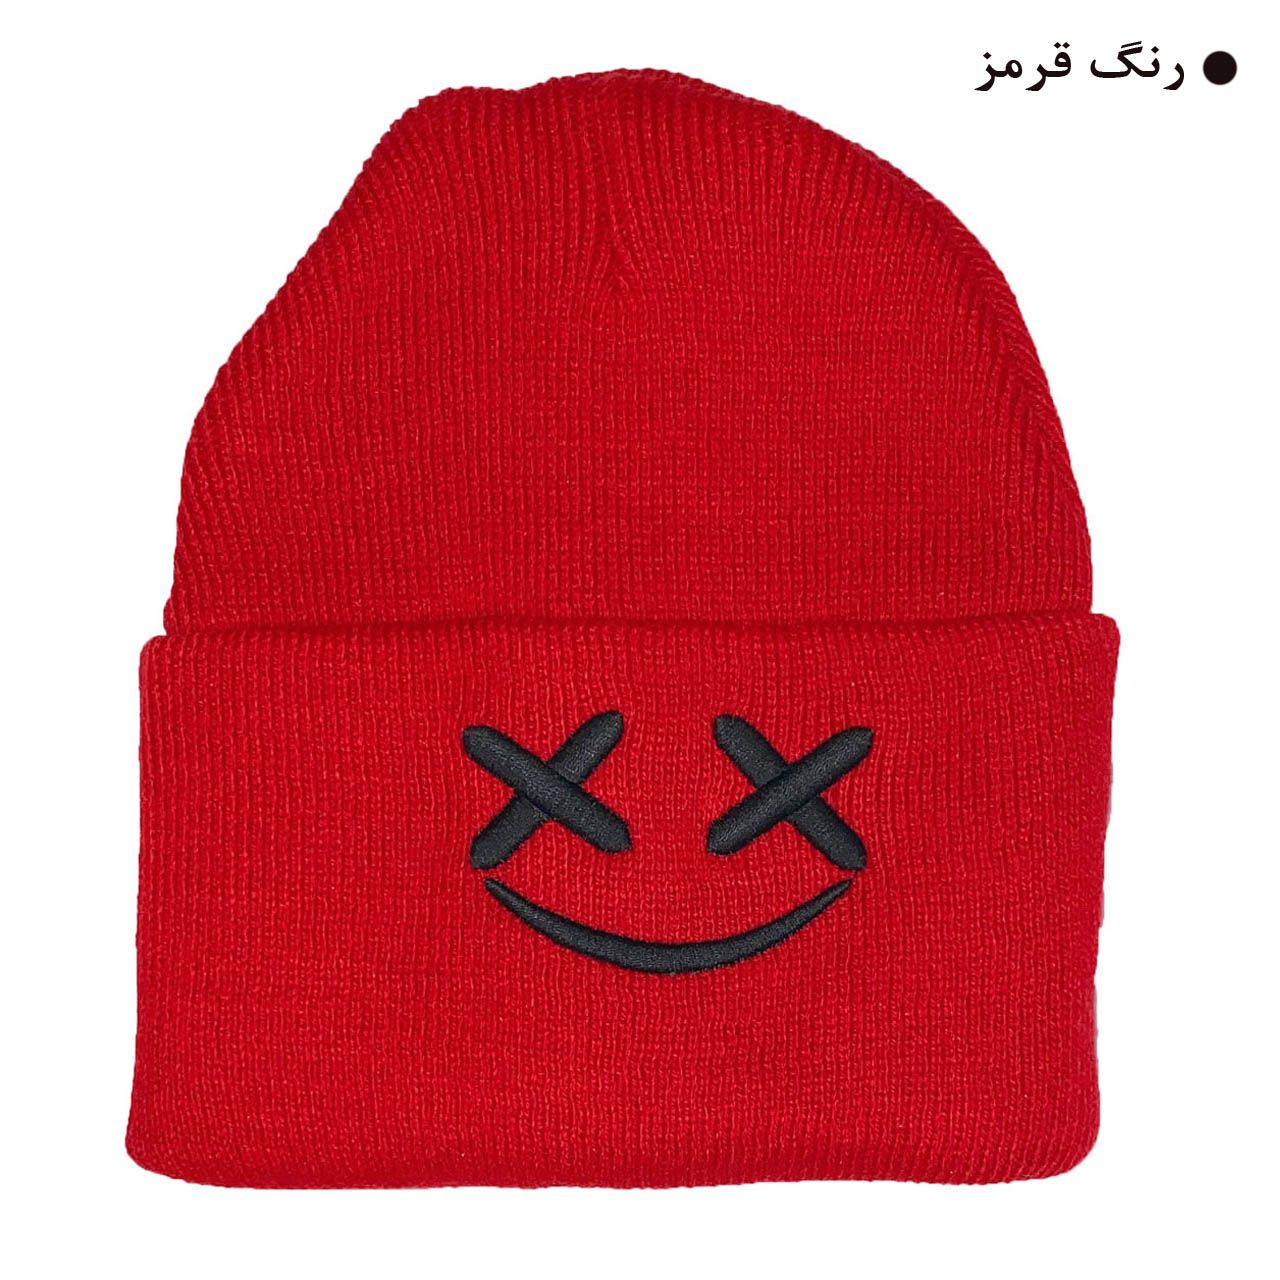 کلاه بافتنی مدل زمستانی طرح لبخند کد 121 -  - 3